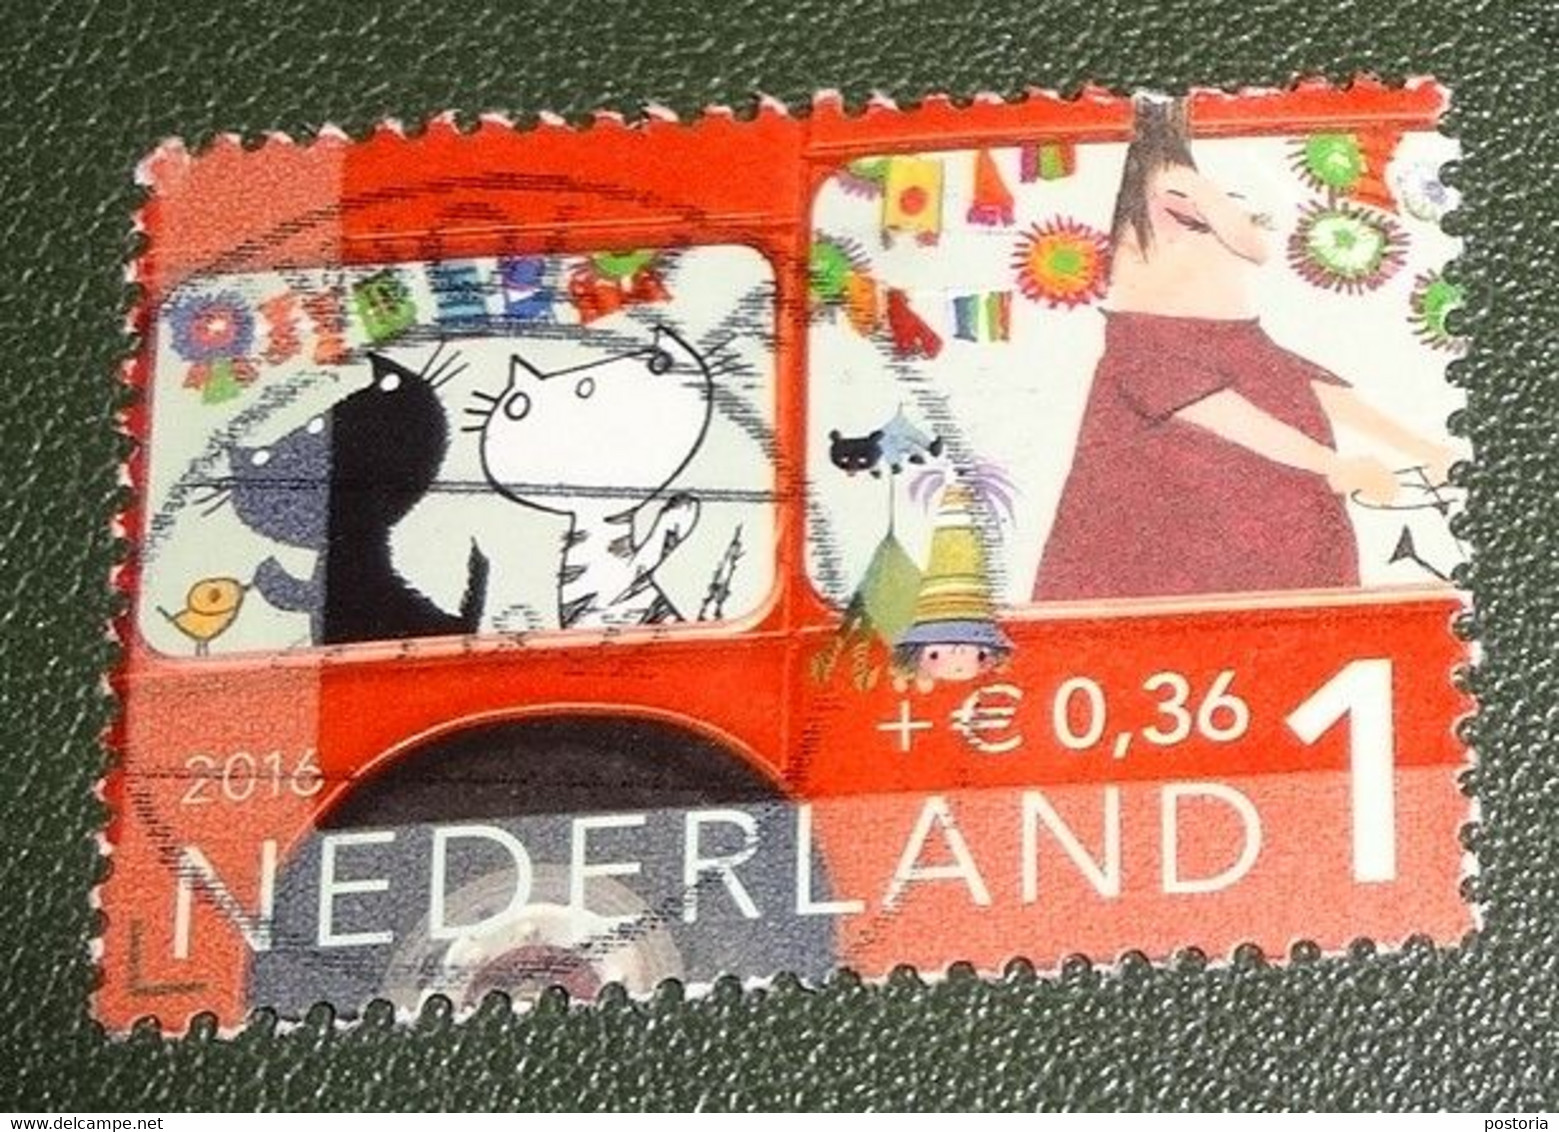 Nederland - NVPH - 3473 F - 2016 - Gebruikt - Cancelled - Kinderzegels - Buschauffeur - Katten - Gebruikt